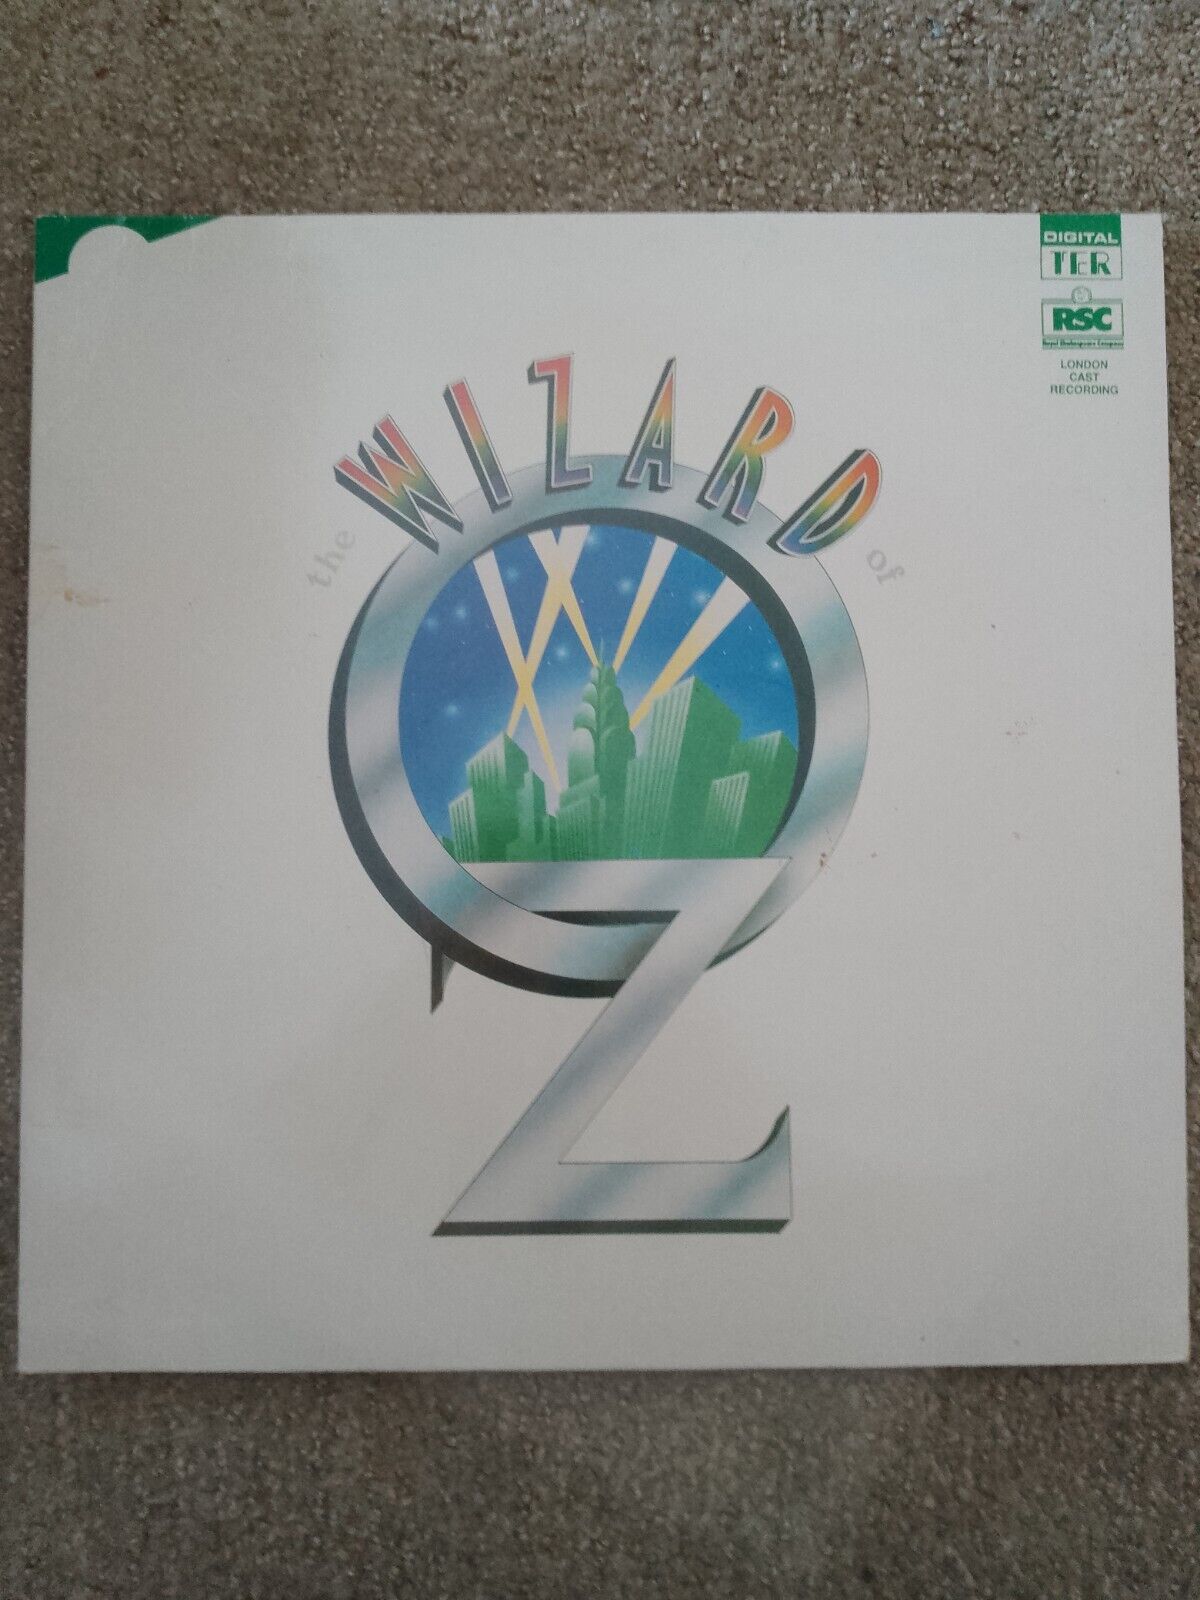 RSC The Wizard of Oz LP RARE Out of Print 1989 Original